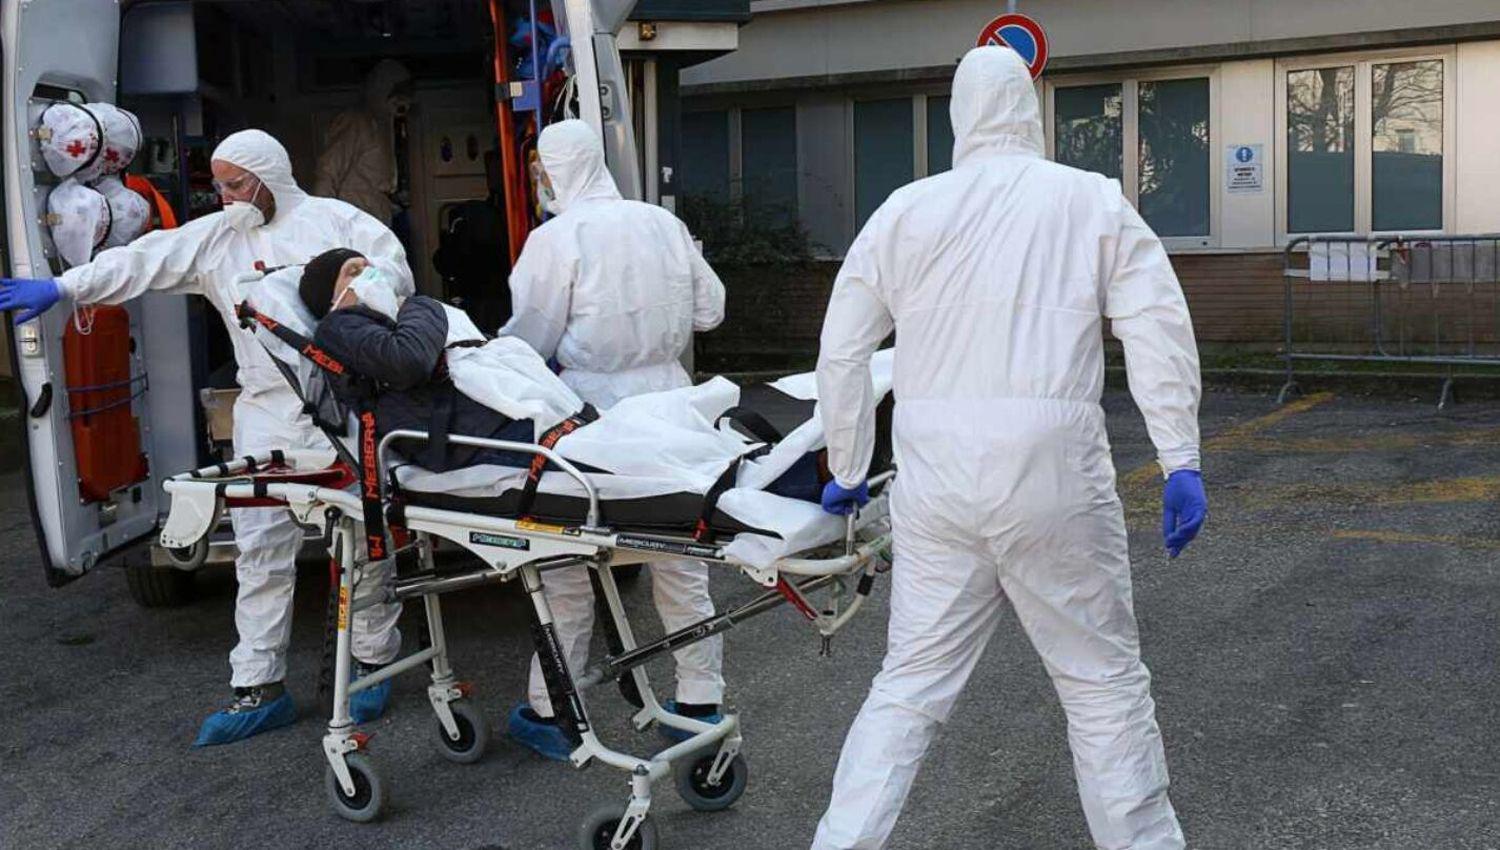 Confirmaron nueve muertes maacutes y 244 contagios en las uacuteltimas 24 horas